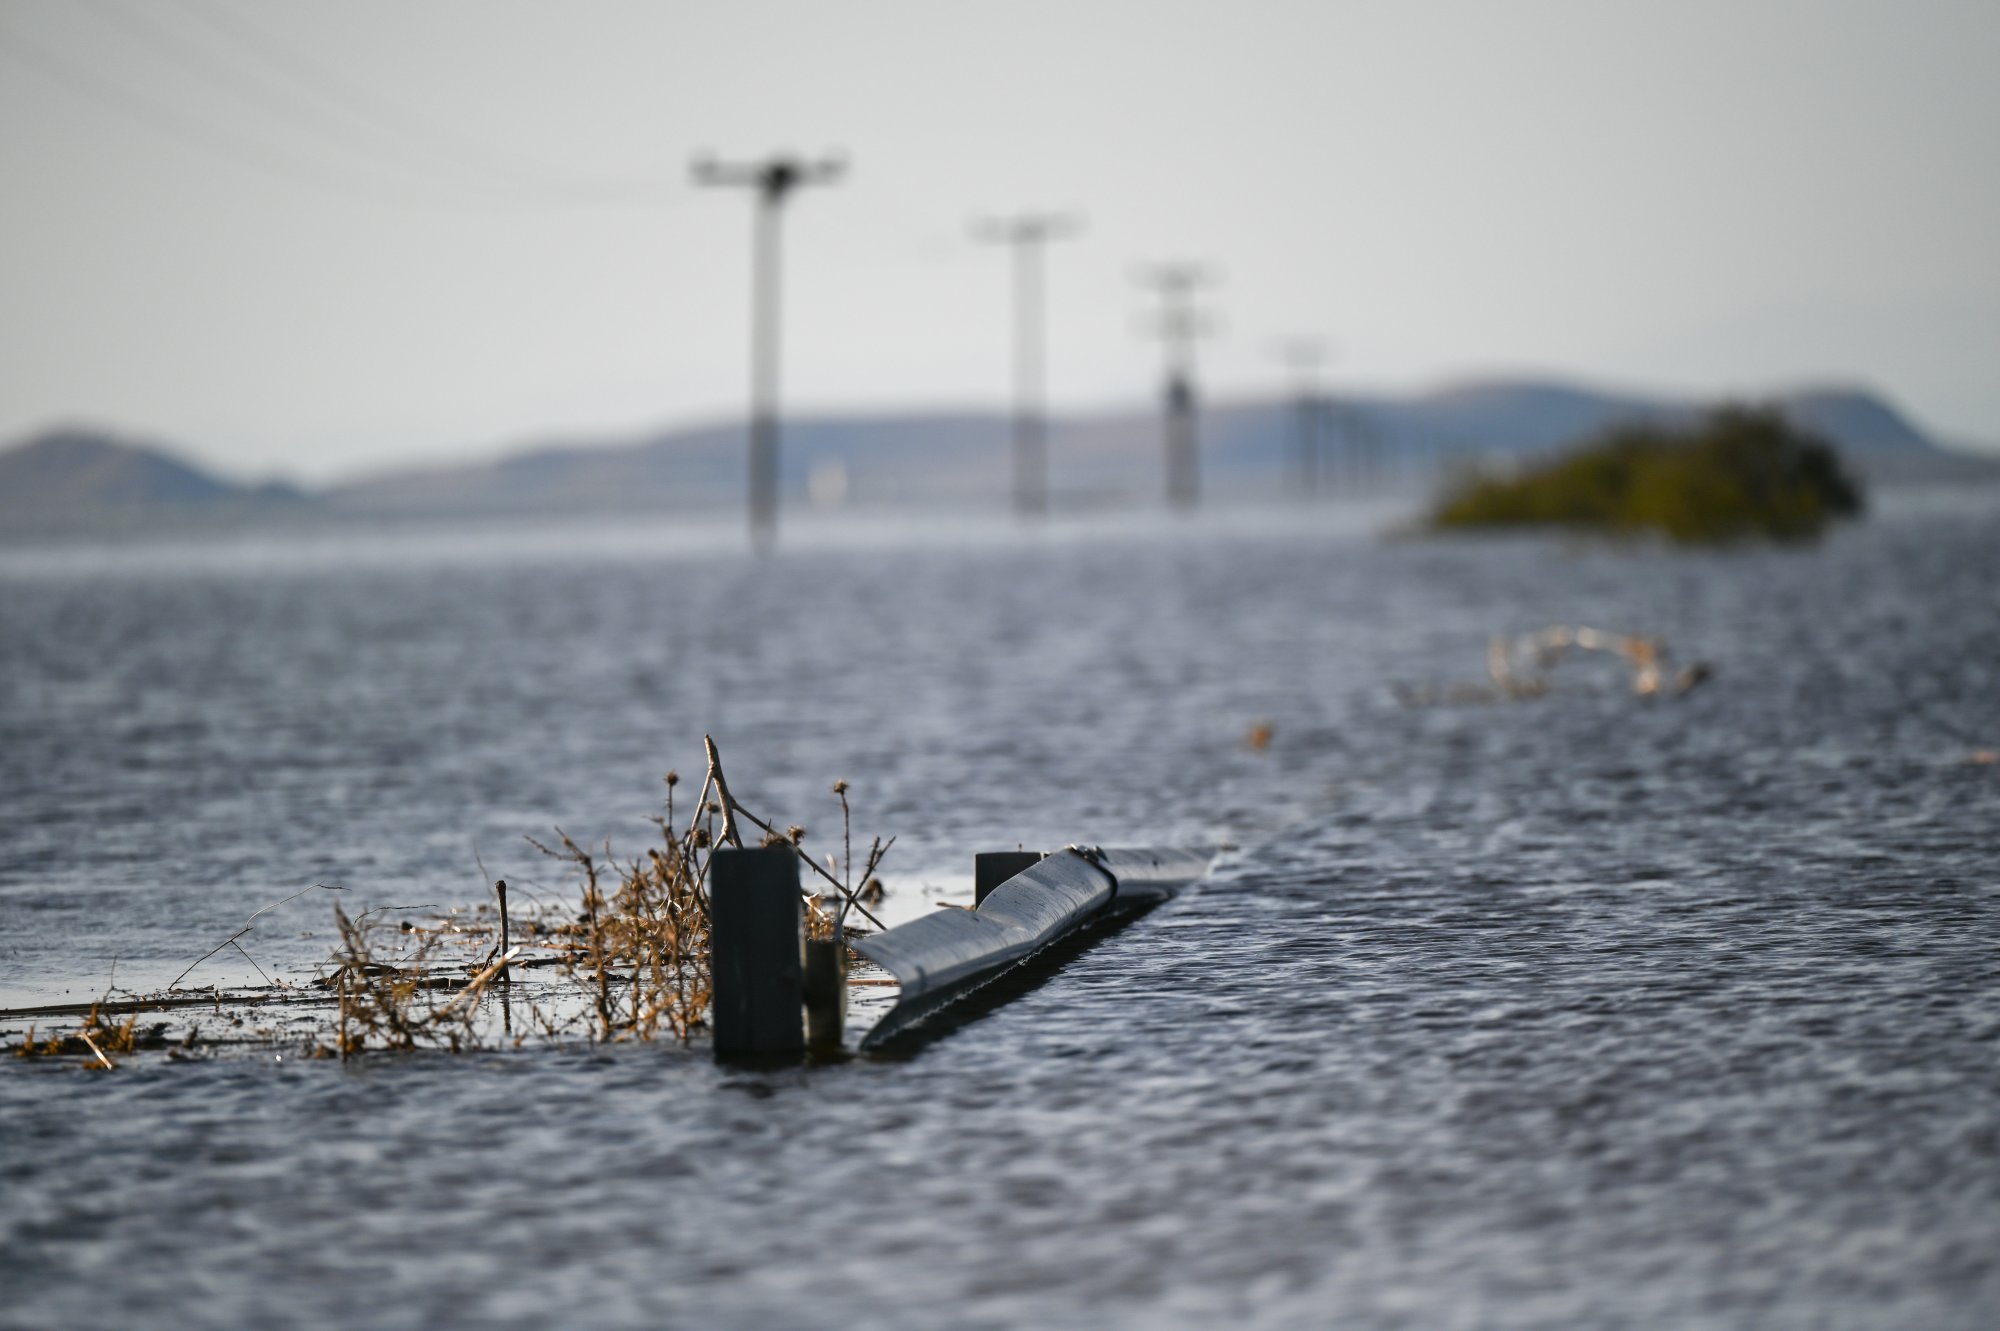  Κακοκαιρία Daniel: Συναγερμός για τη λίμνη Κάρλα – Nέο μήνυμα του 112 – Φόβοι για νέα πλημμυρικά φαινόμενα